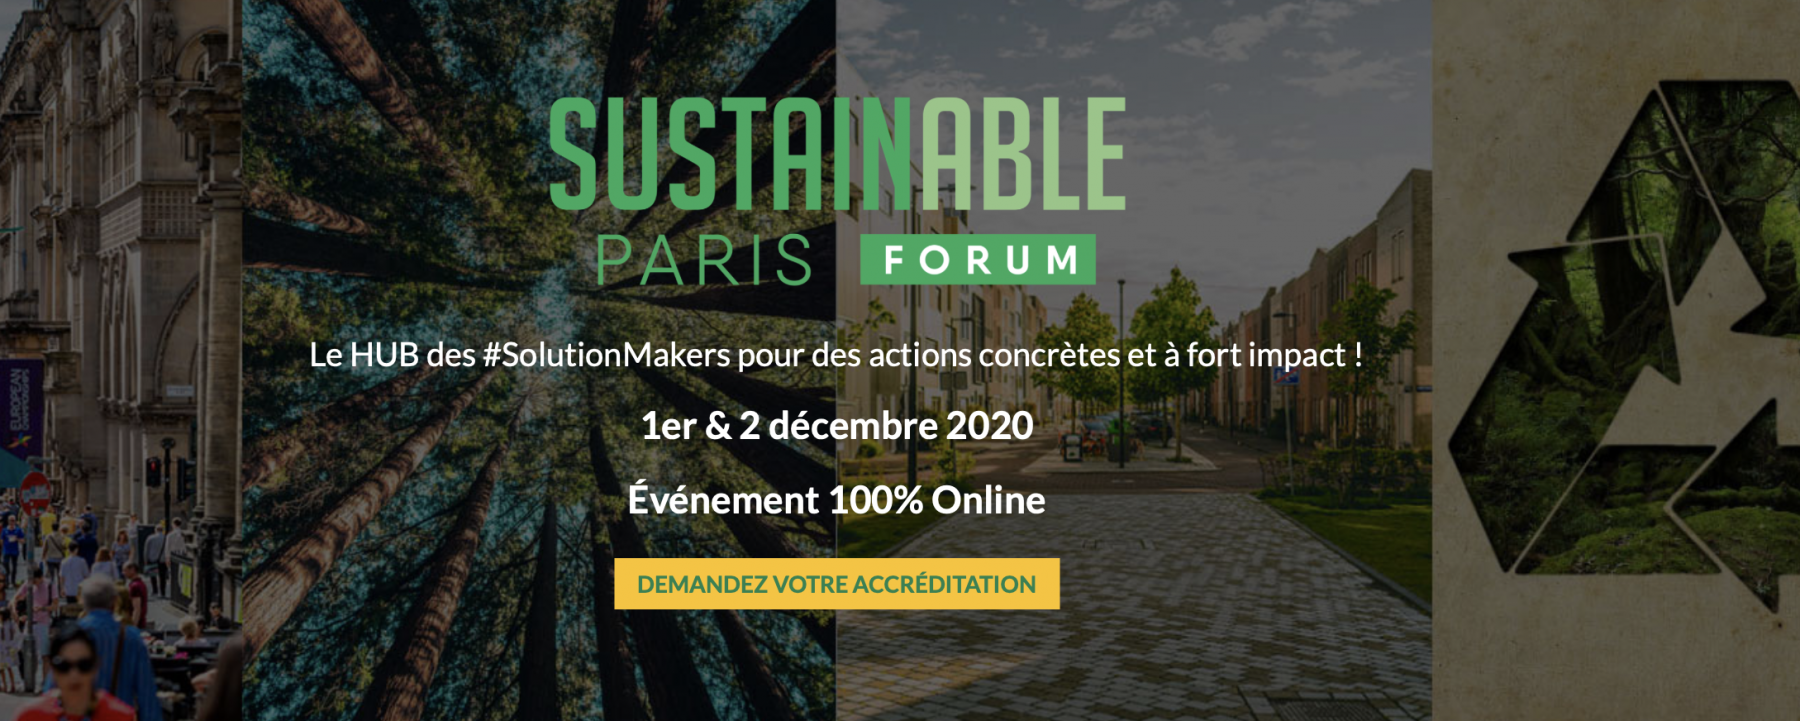 Sustainable Paris Forum, organisé par Hub Institute les 1er et 2 décembre 2020 